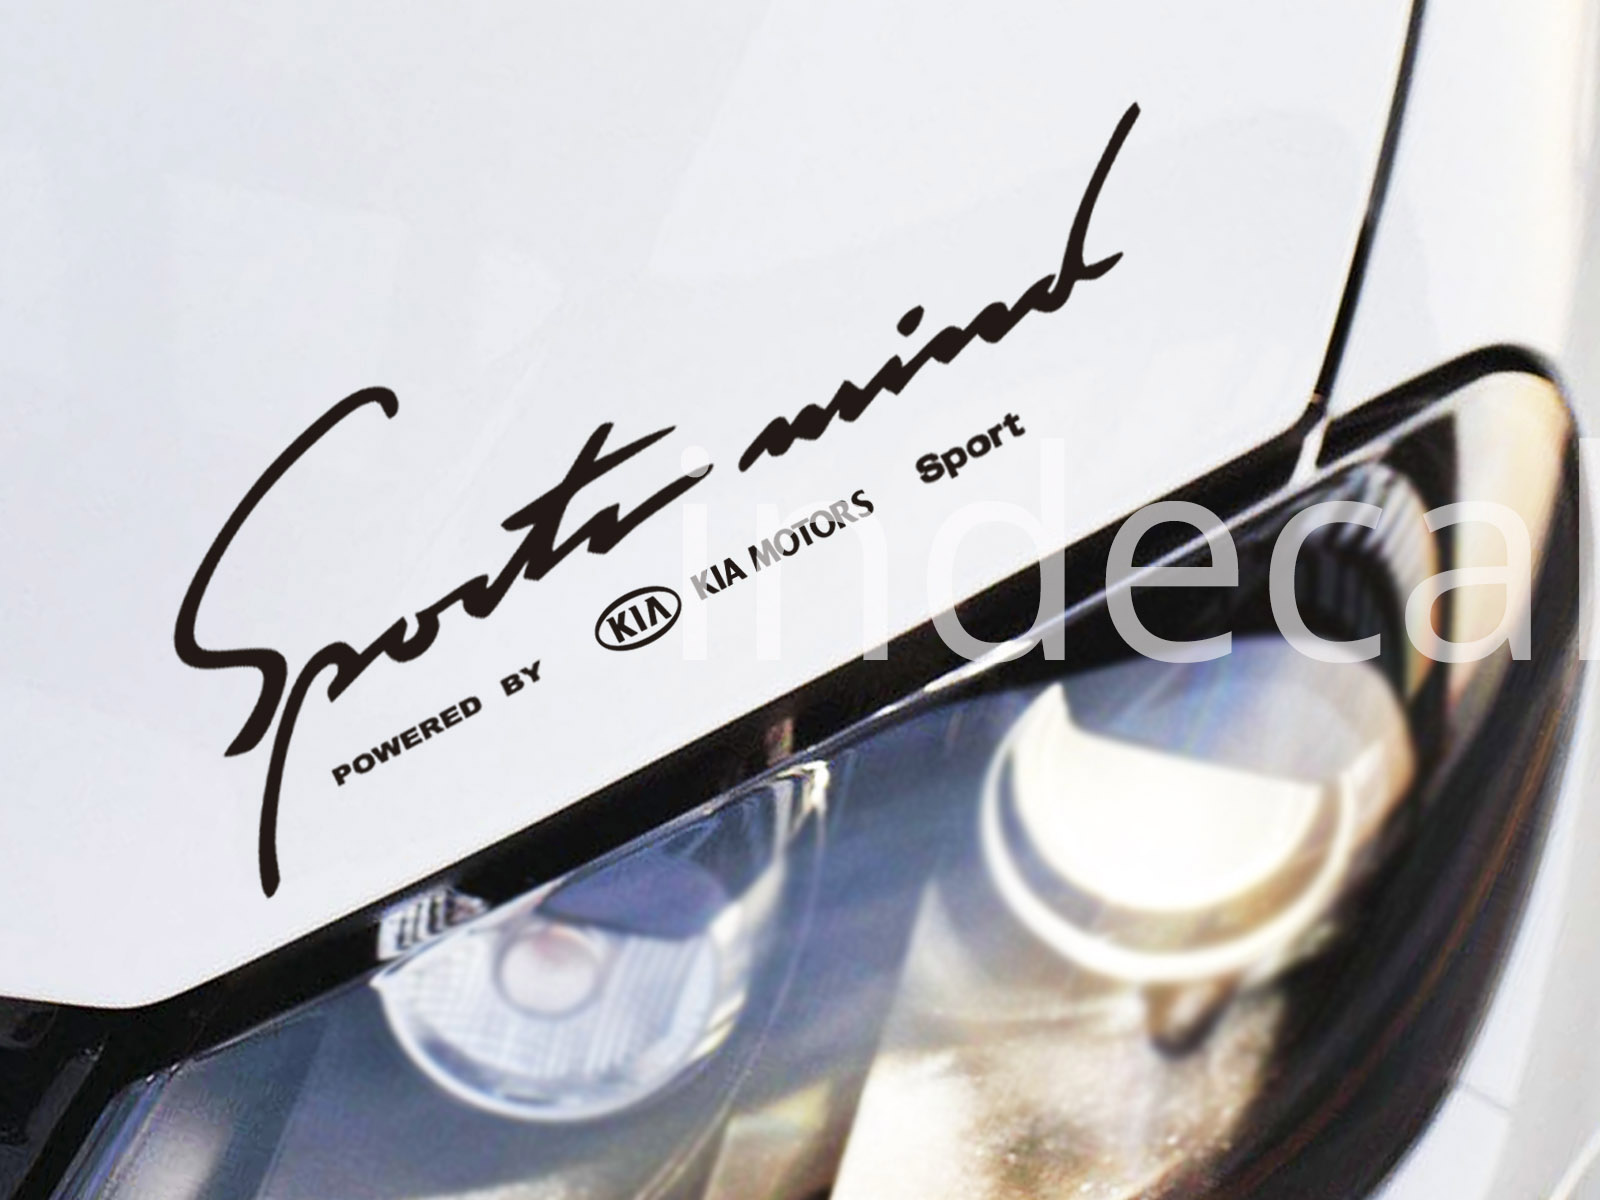 1 x Kia Sports Mind Sticker - Black